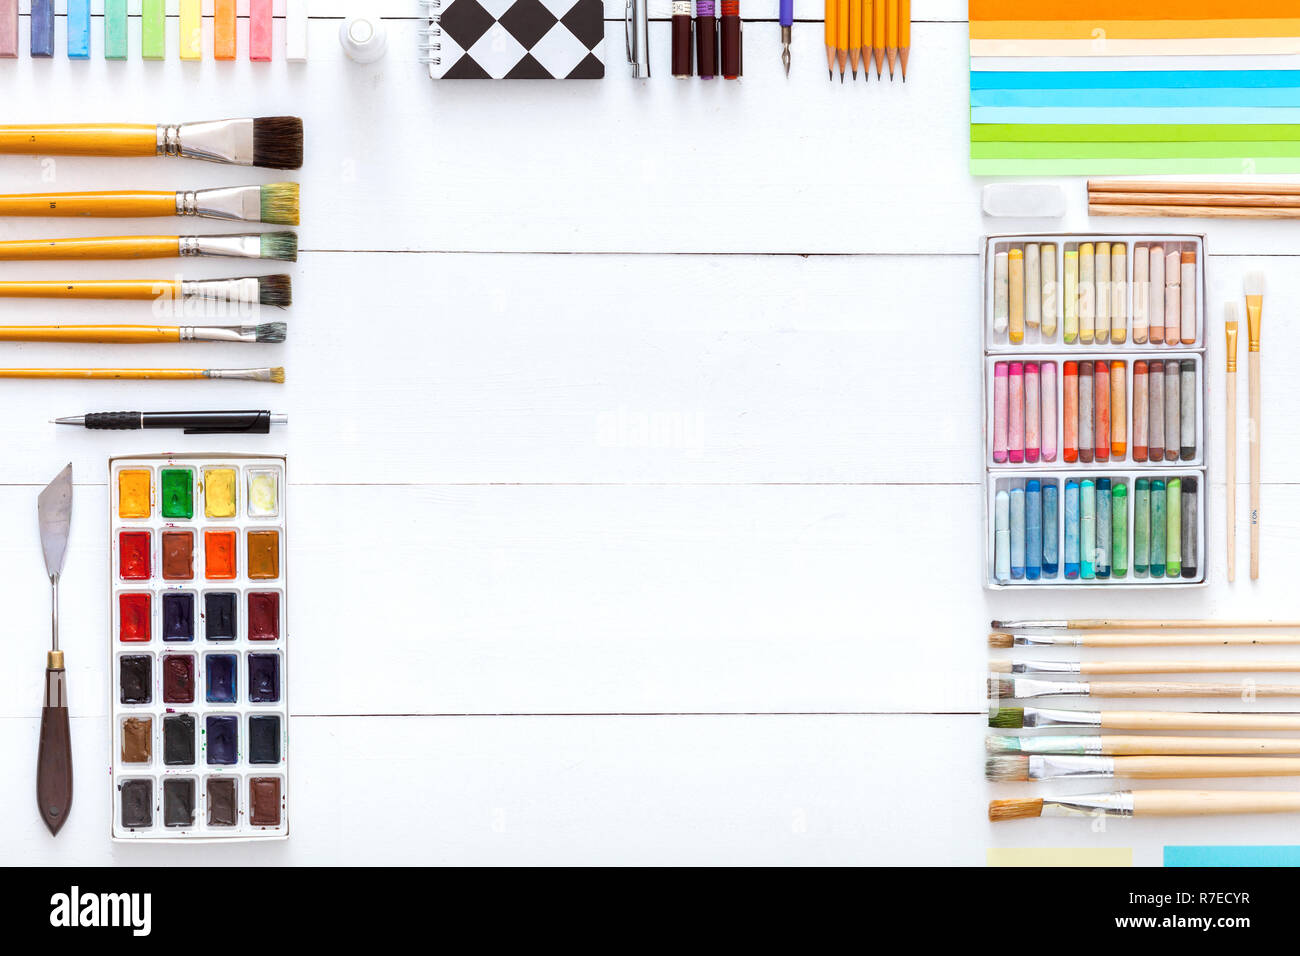 Kreative Werkzeuge Schreibtisch mit Zeichnung Malerei liefert, bunte Farben Pinsel Buntstifte Buntstifte und Schule Zubehör für Kunst auf weißem Holz- ta eingestellt Stockfoto